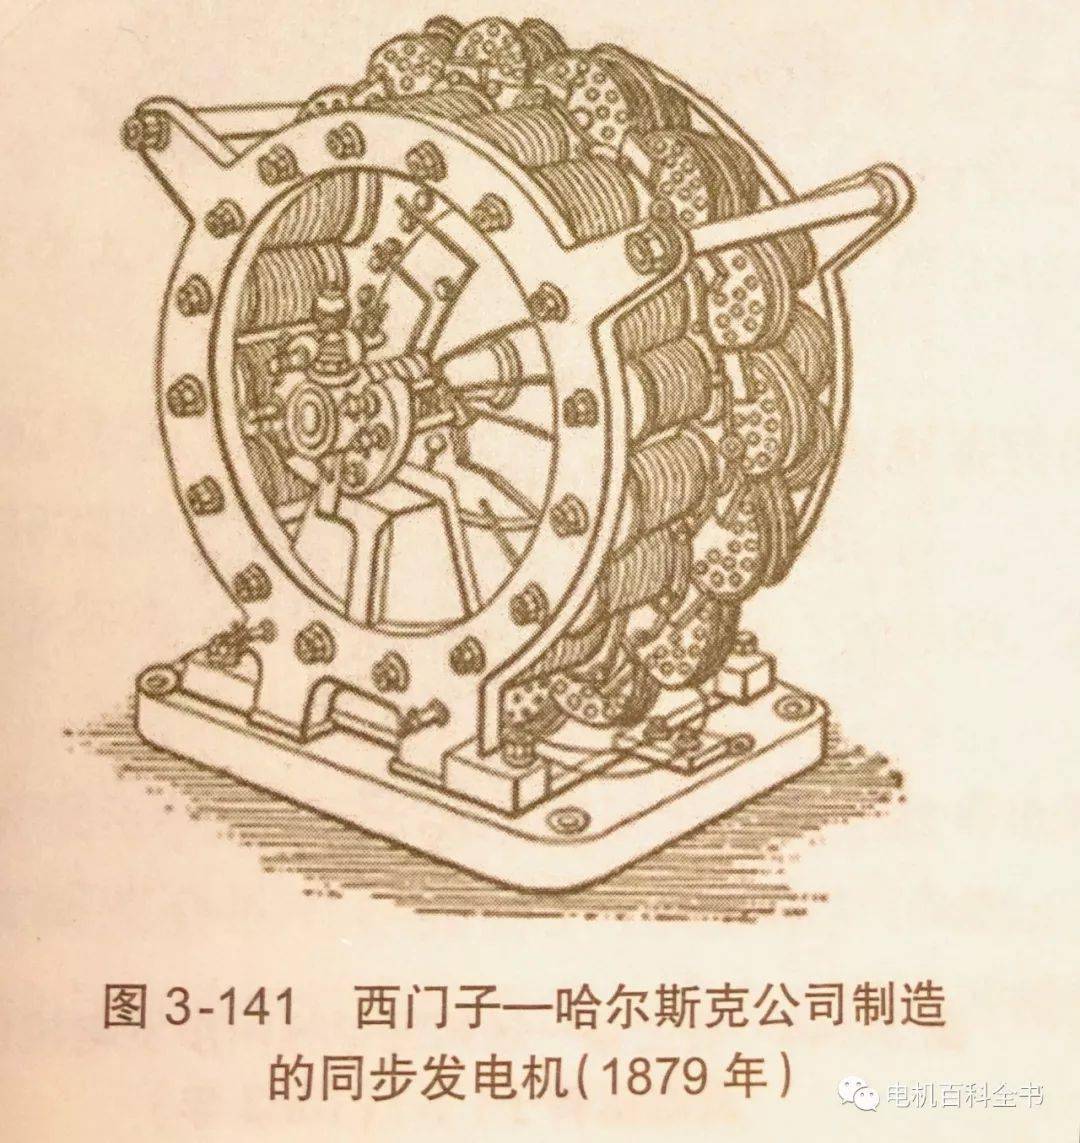 现代电气巨头之一的西门子第一次中国合作,通过革命性的实用发电机